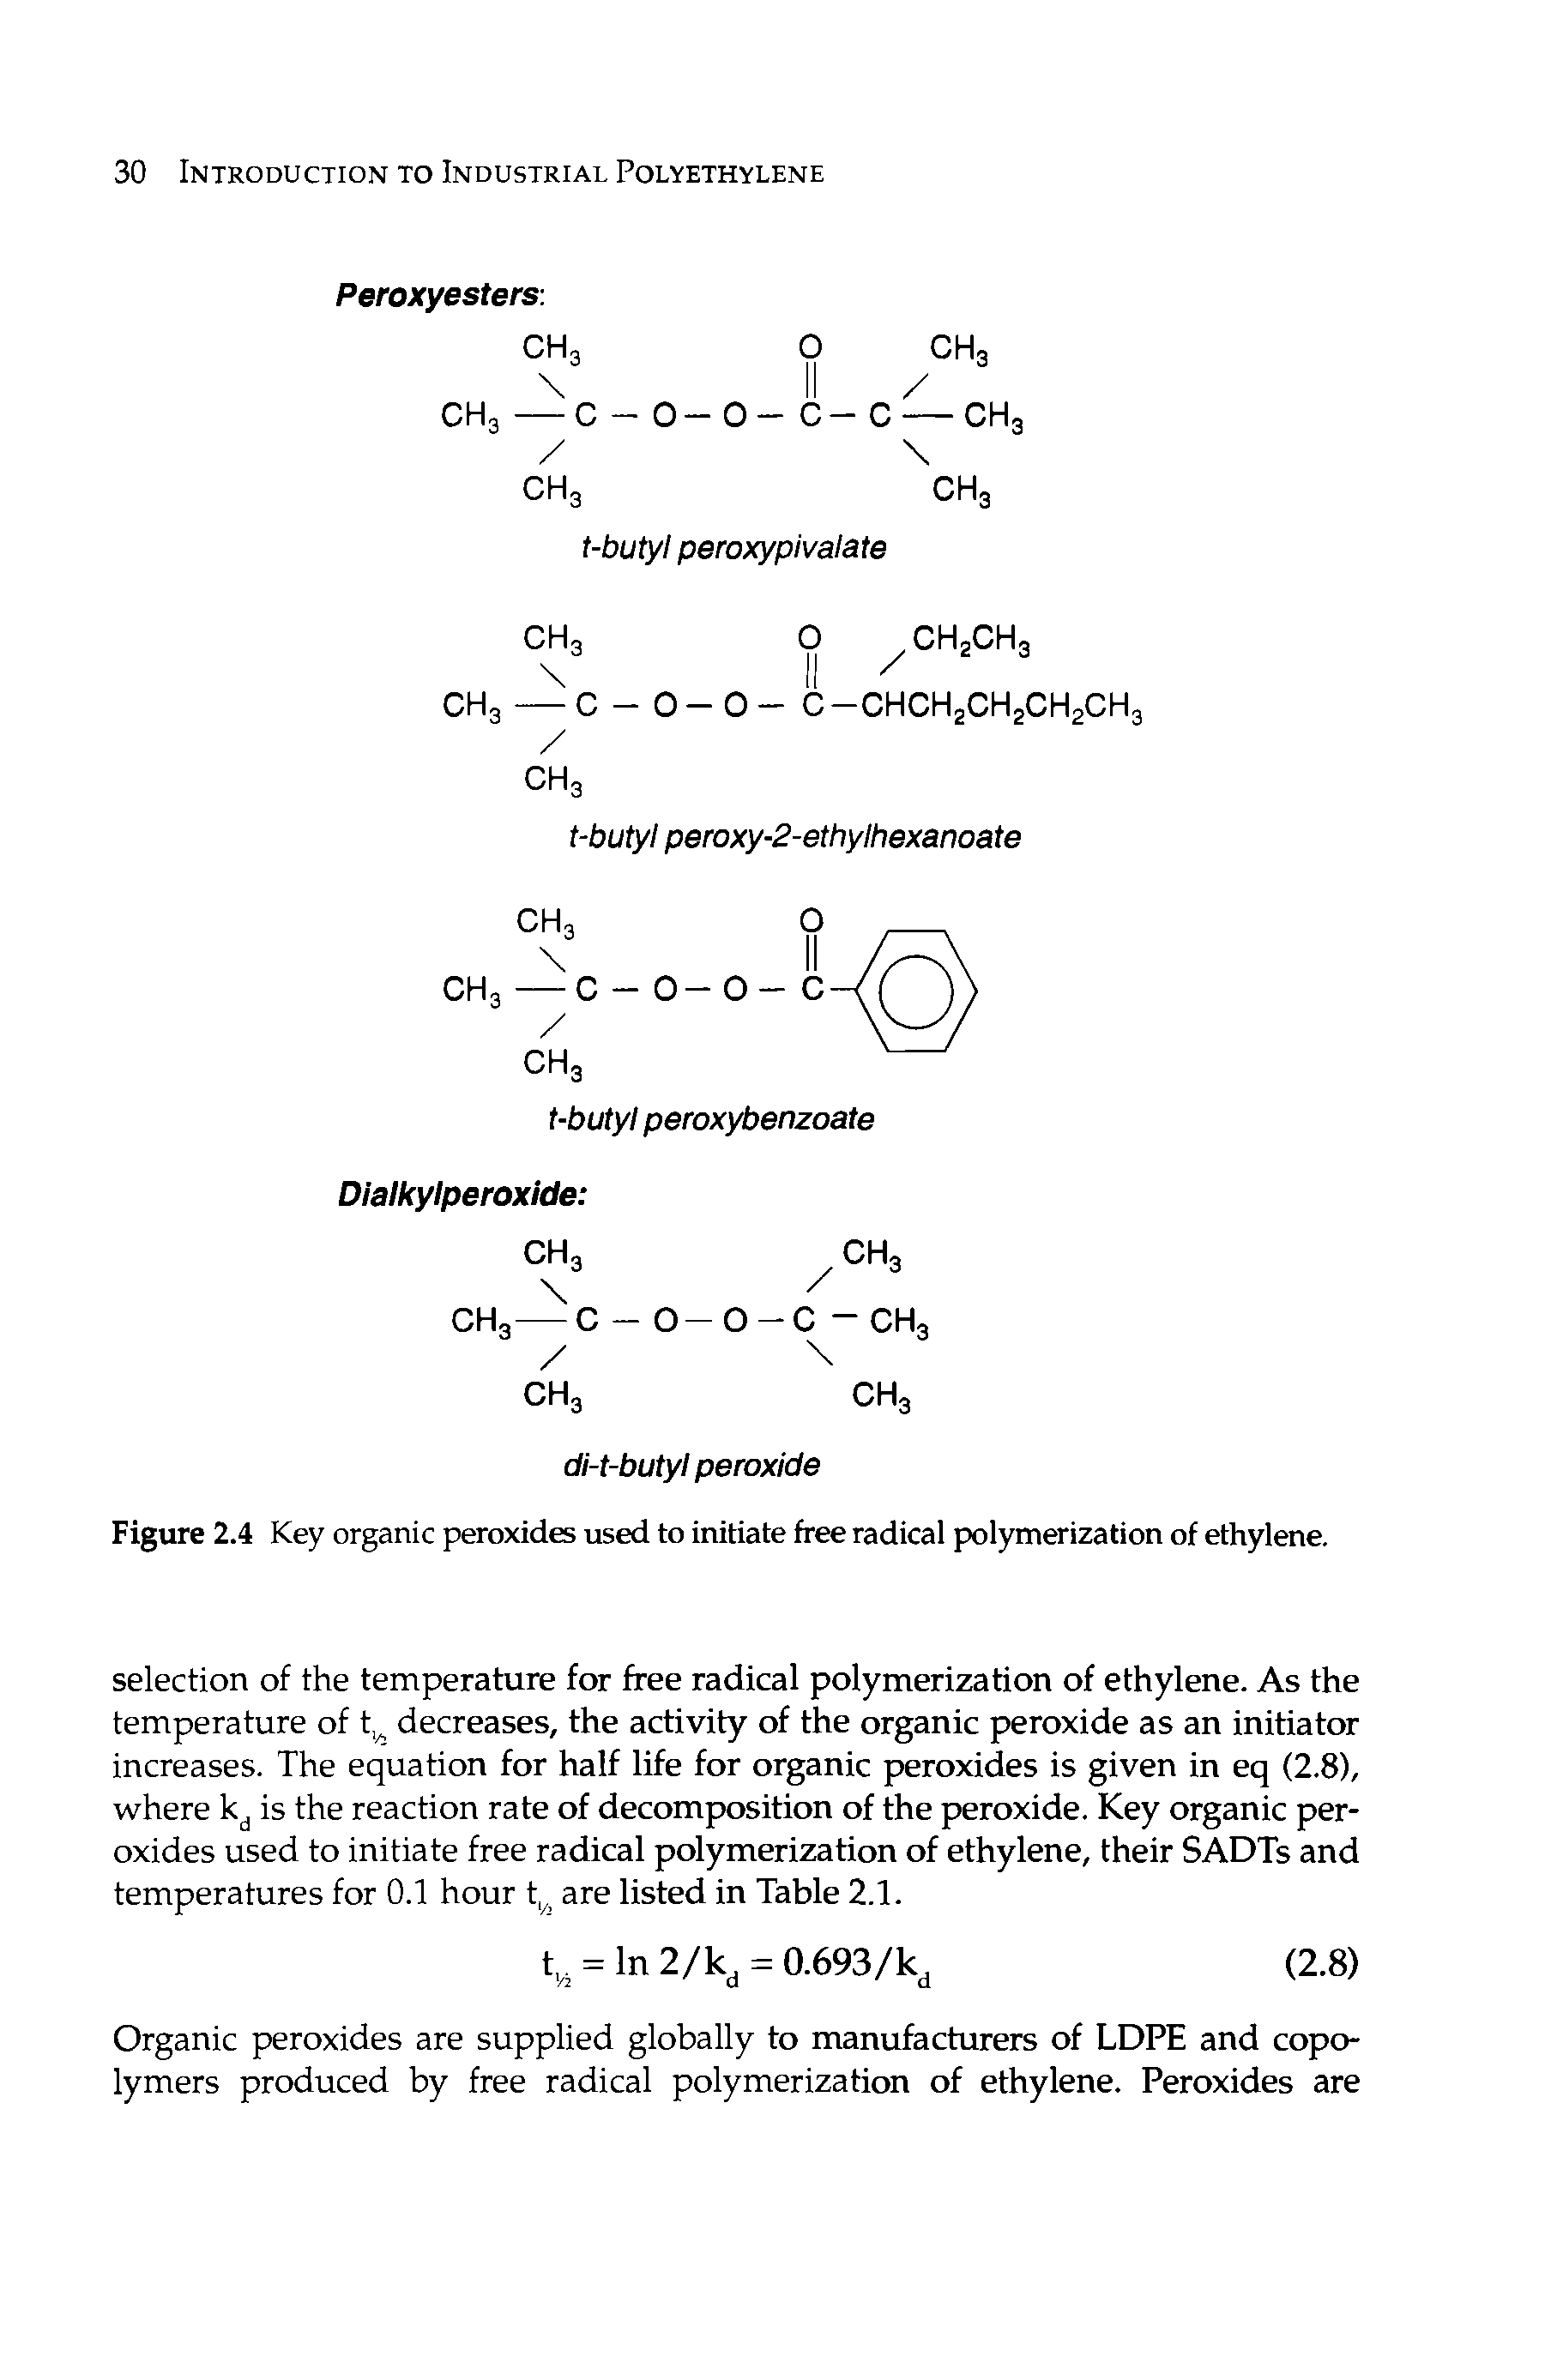 Figure 2.4 Key organic peroxides used to initiate free radical polymerization of ethylene.